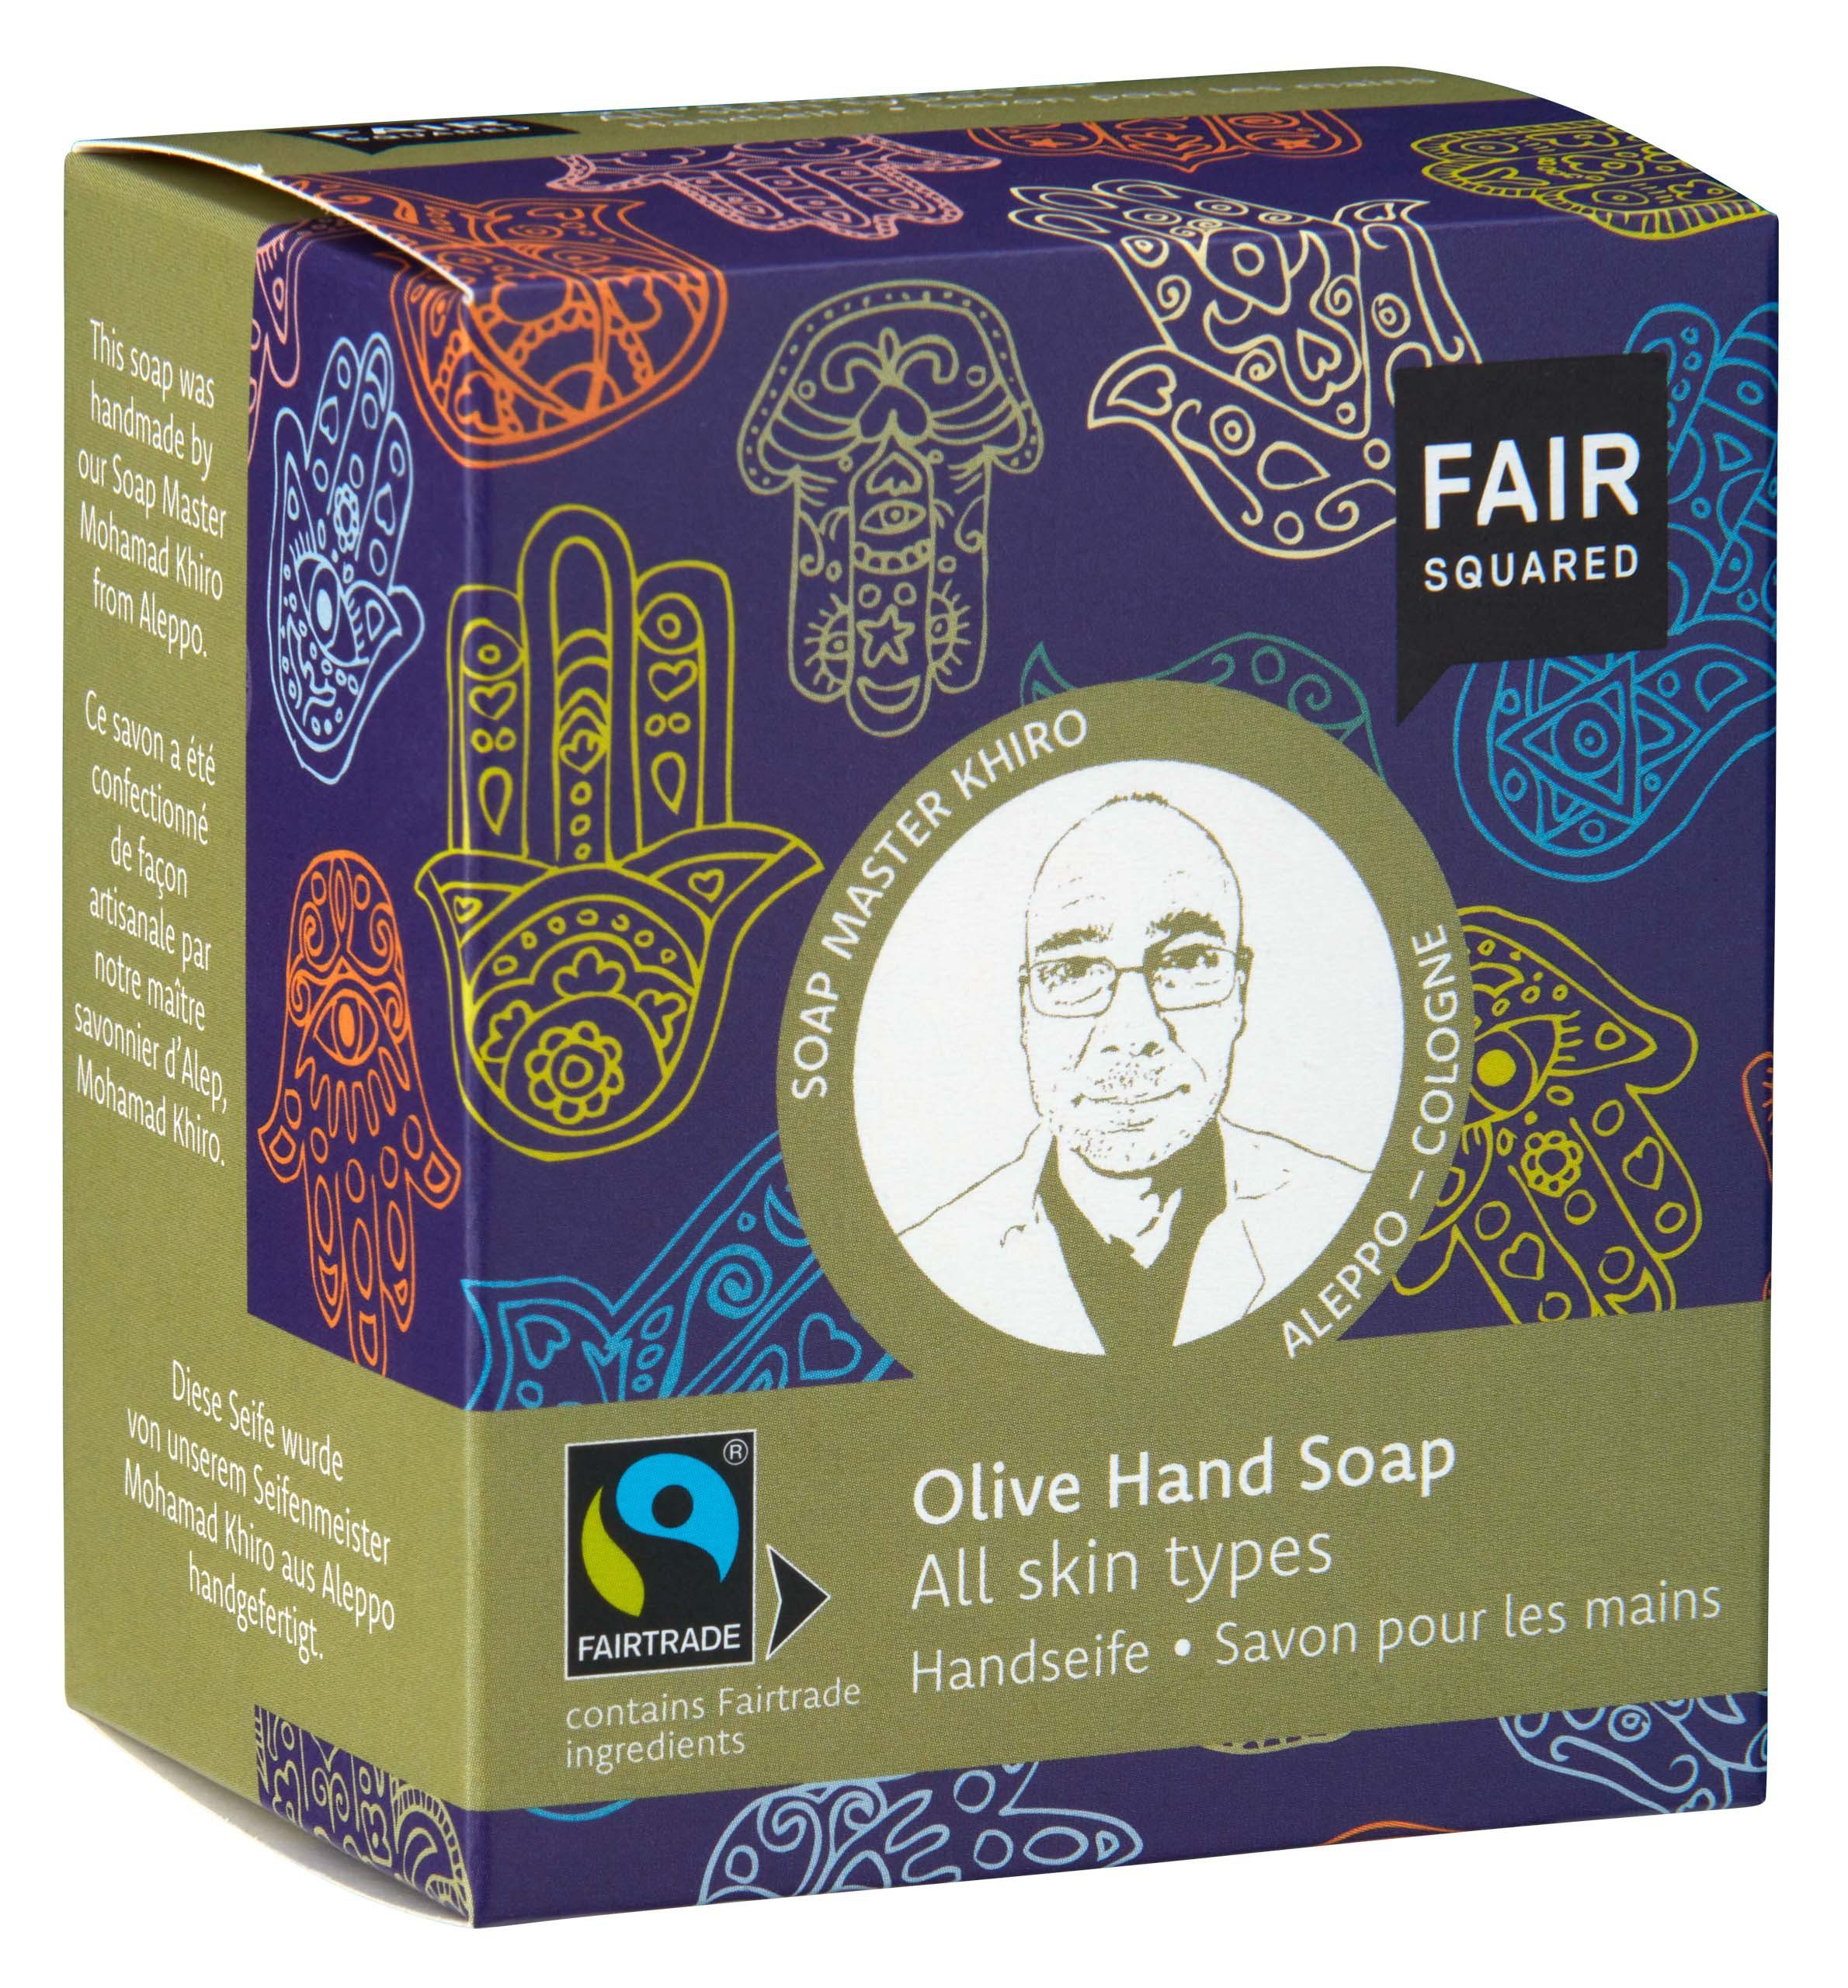 Fair Squared Handseife FAIR SQUARED Handseife mit Olivenöl für alle Hauttypen geeignet mit fair gehandelten Inhaltsstoffen, 1-tlg., Für alle Hauttypen